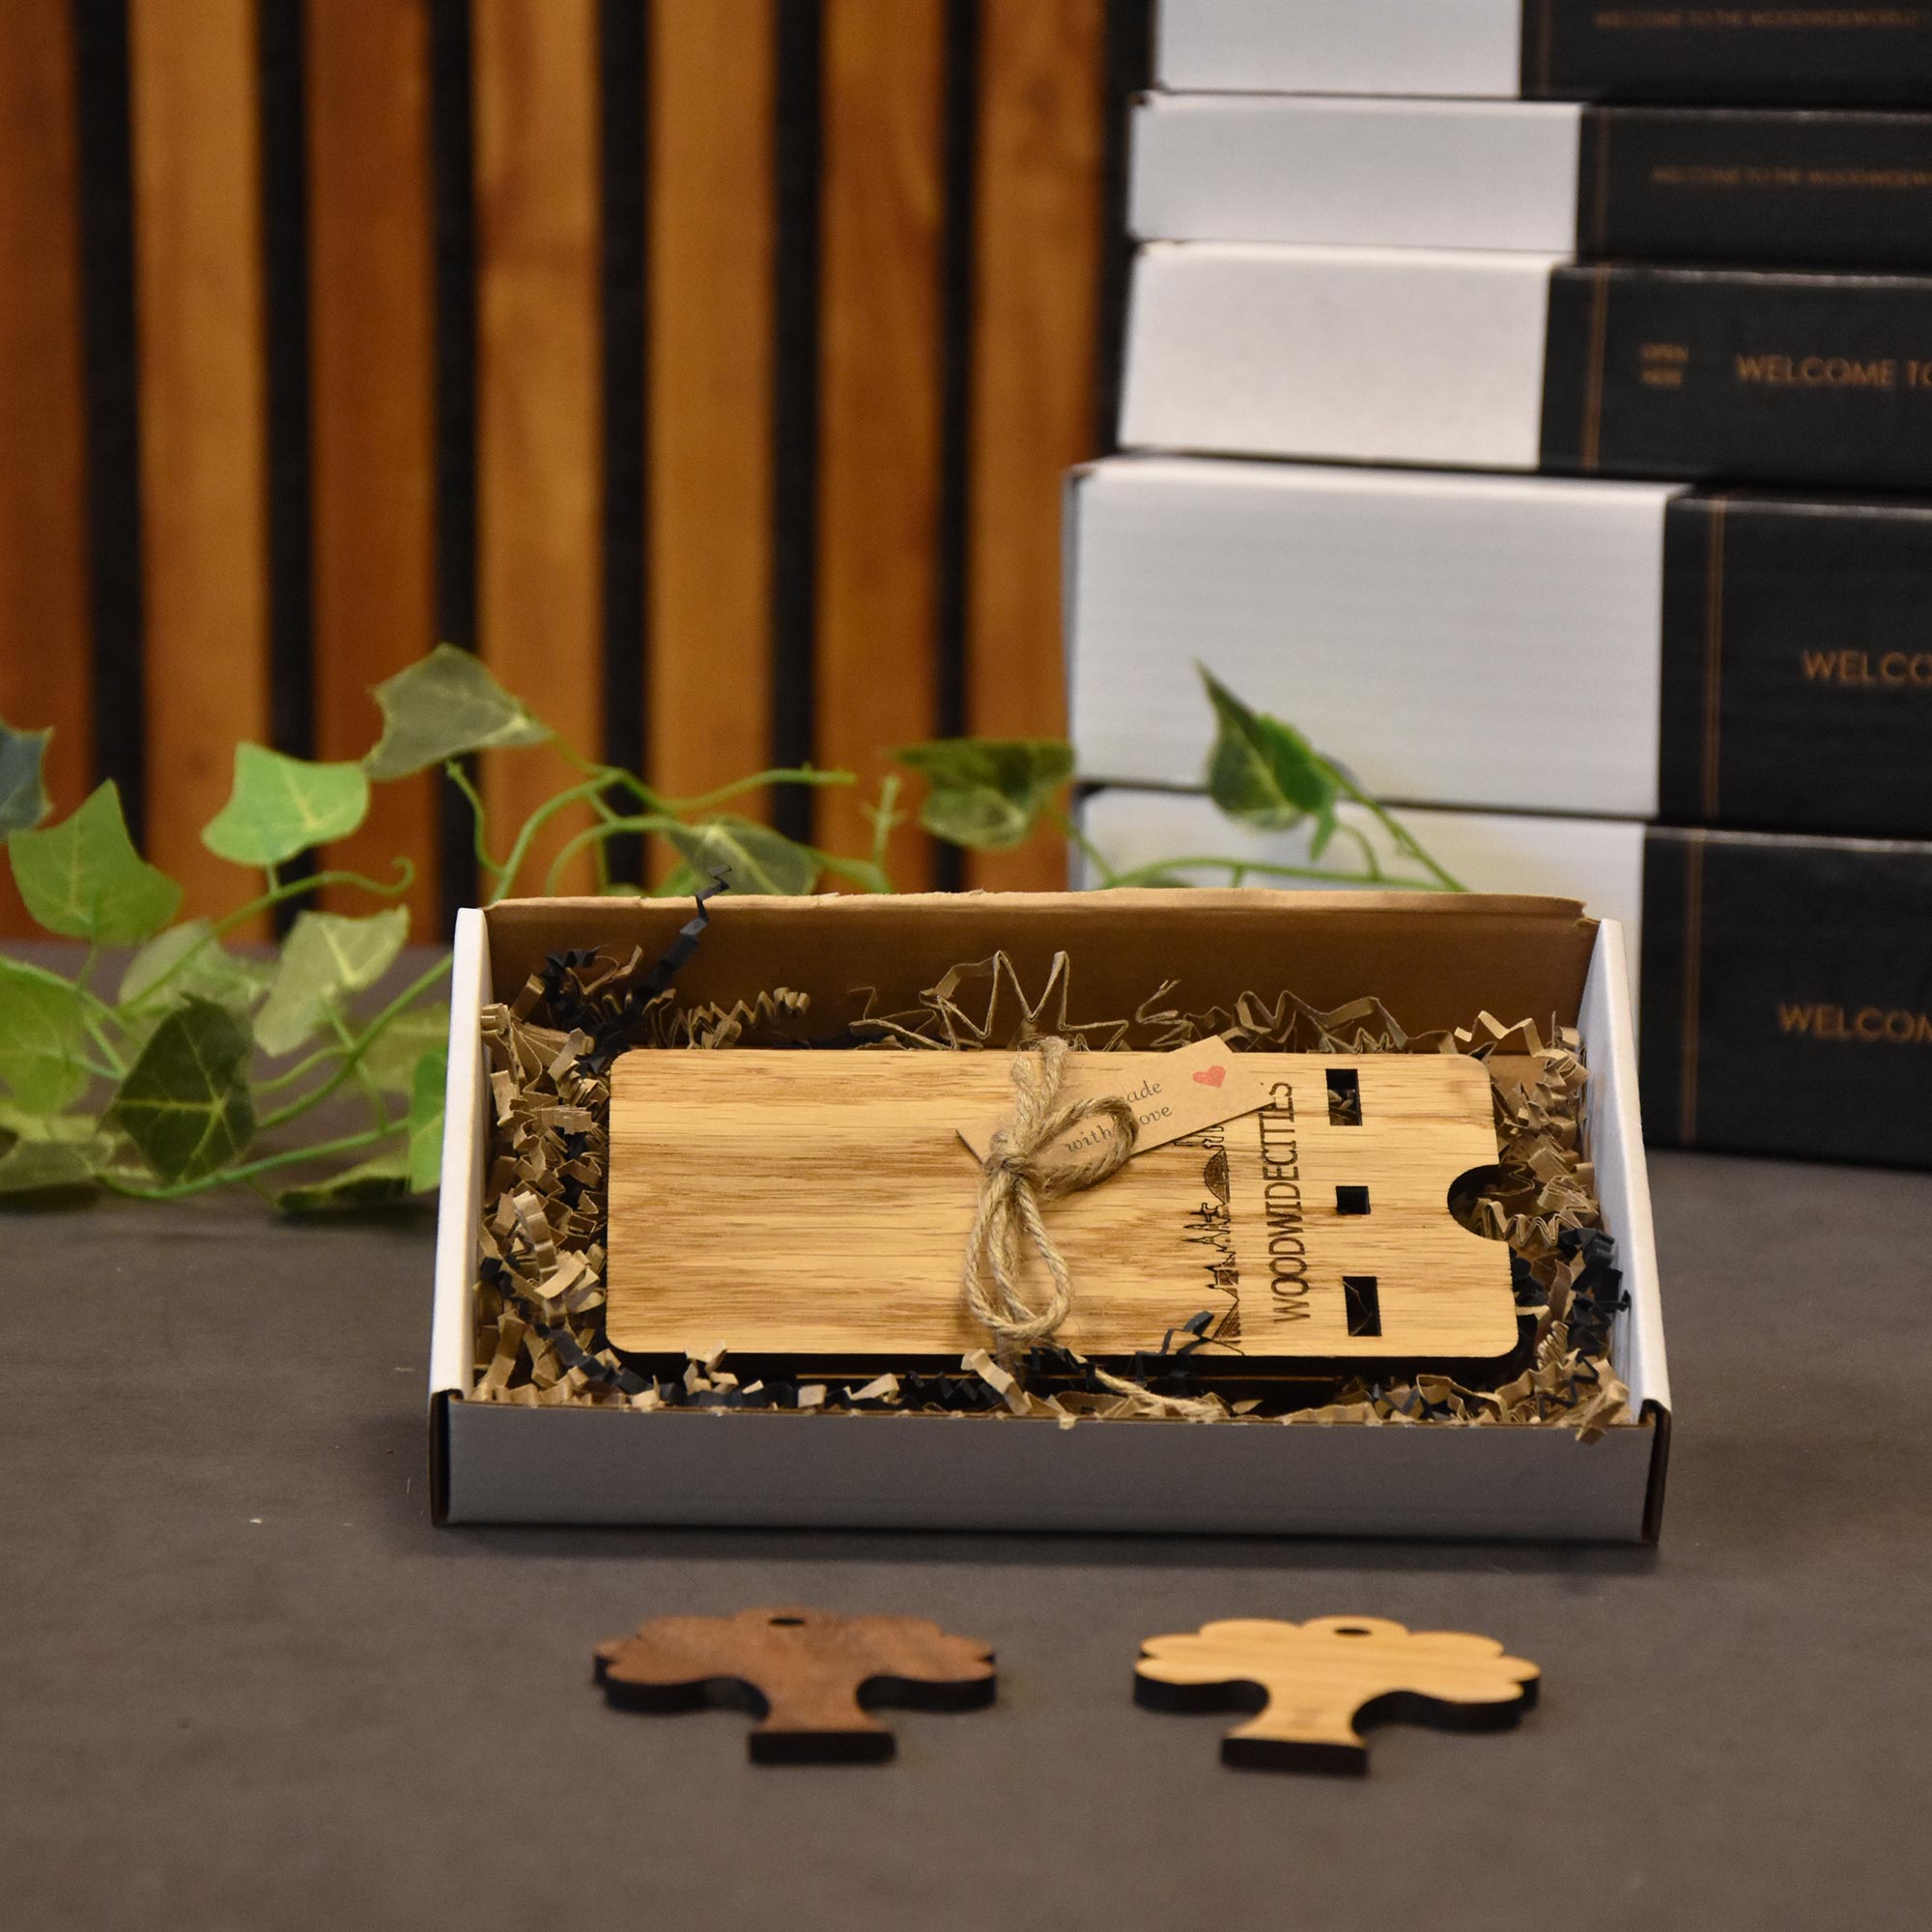 Skyline Telefoonhouder Beuningen houten cadeau decoratie relatiegeschenk van WoodWideCities